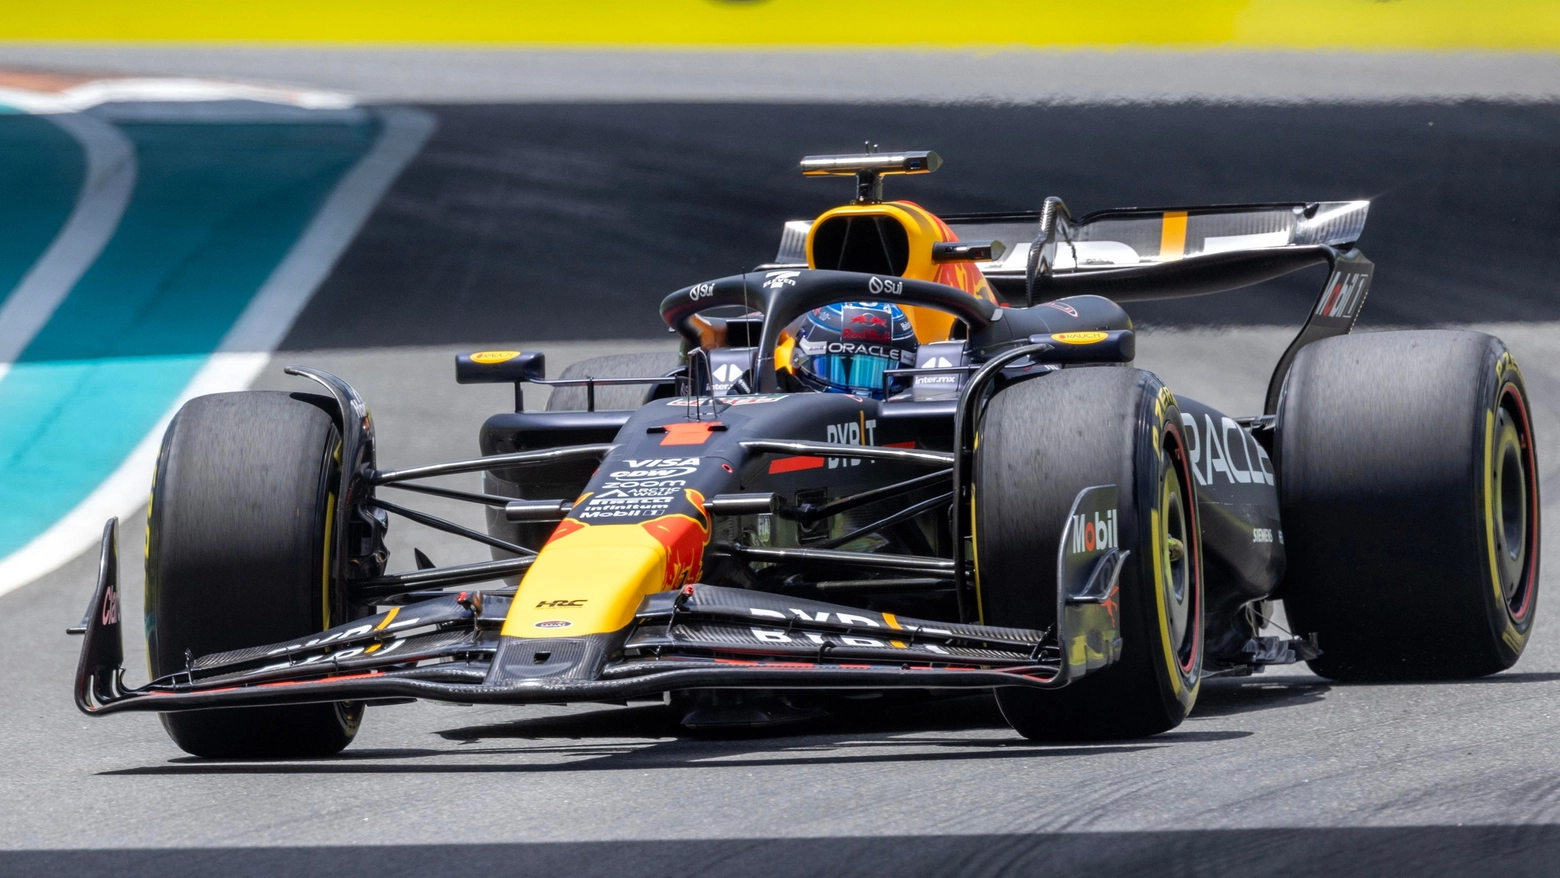 Terza l’altra Red Bull di Perez, quarto un sorprendete Ricciardo (Racing Bulls). Quinta la Ferrari di Sainz